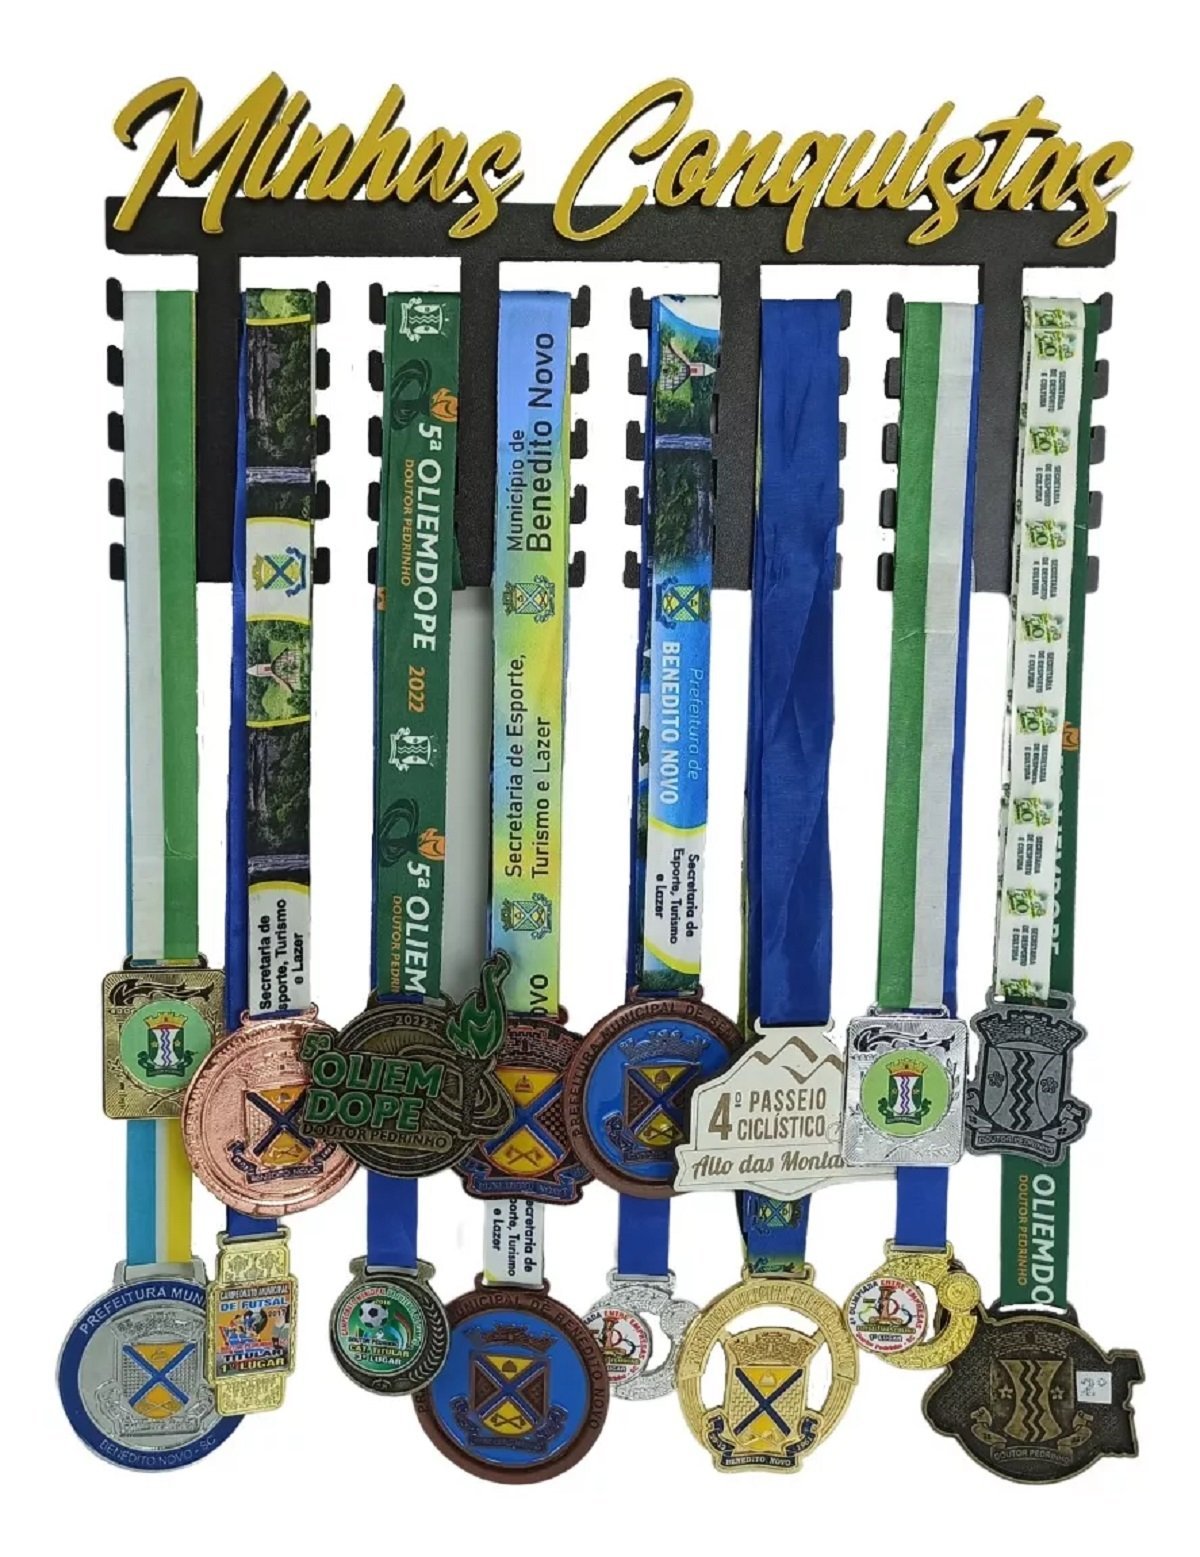 Quadro Porta Medalhas Grande para 30 Medalhes - Expositor Minhas Conquistas de MDF Preto e Acrílico  - 1